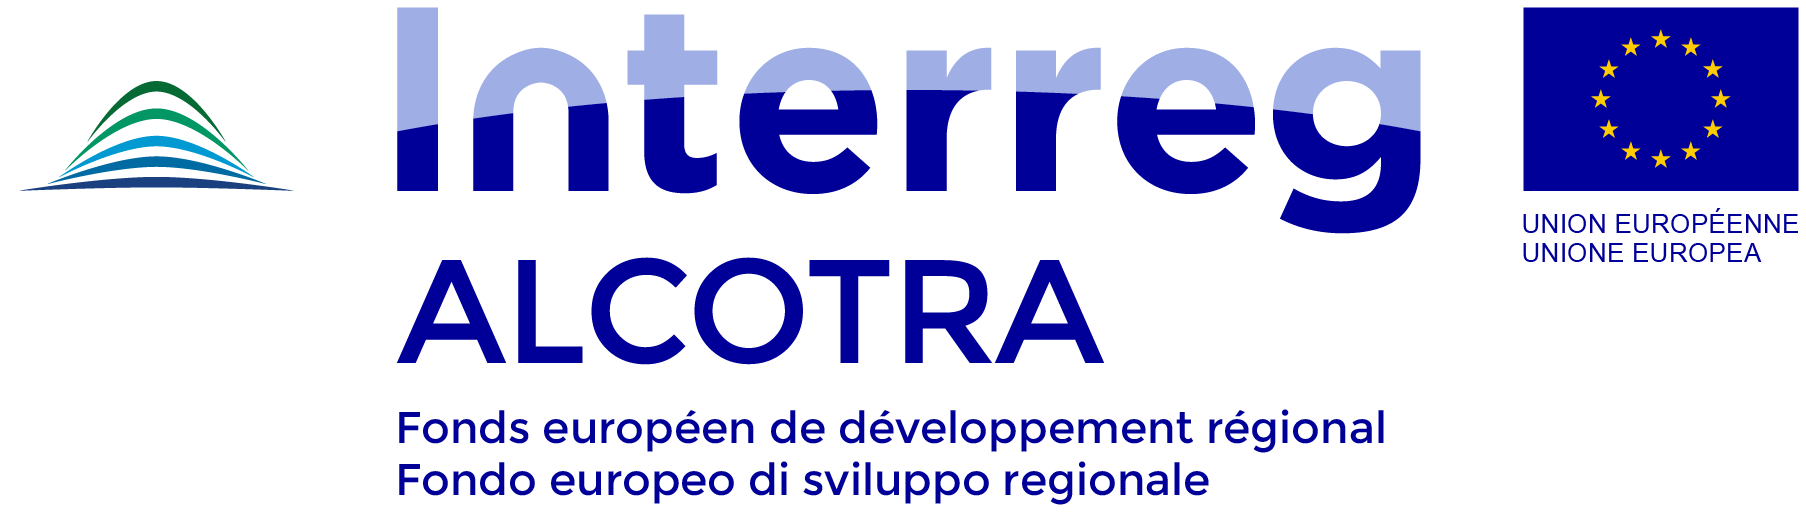 Logo Interreg Alcotra - Fondo Europeo di Sviluppo Regionale